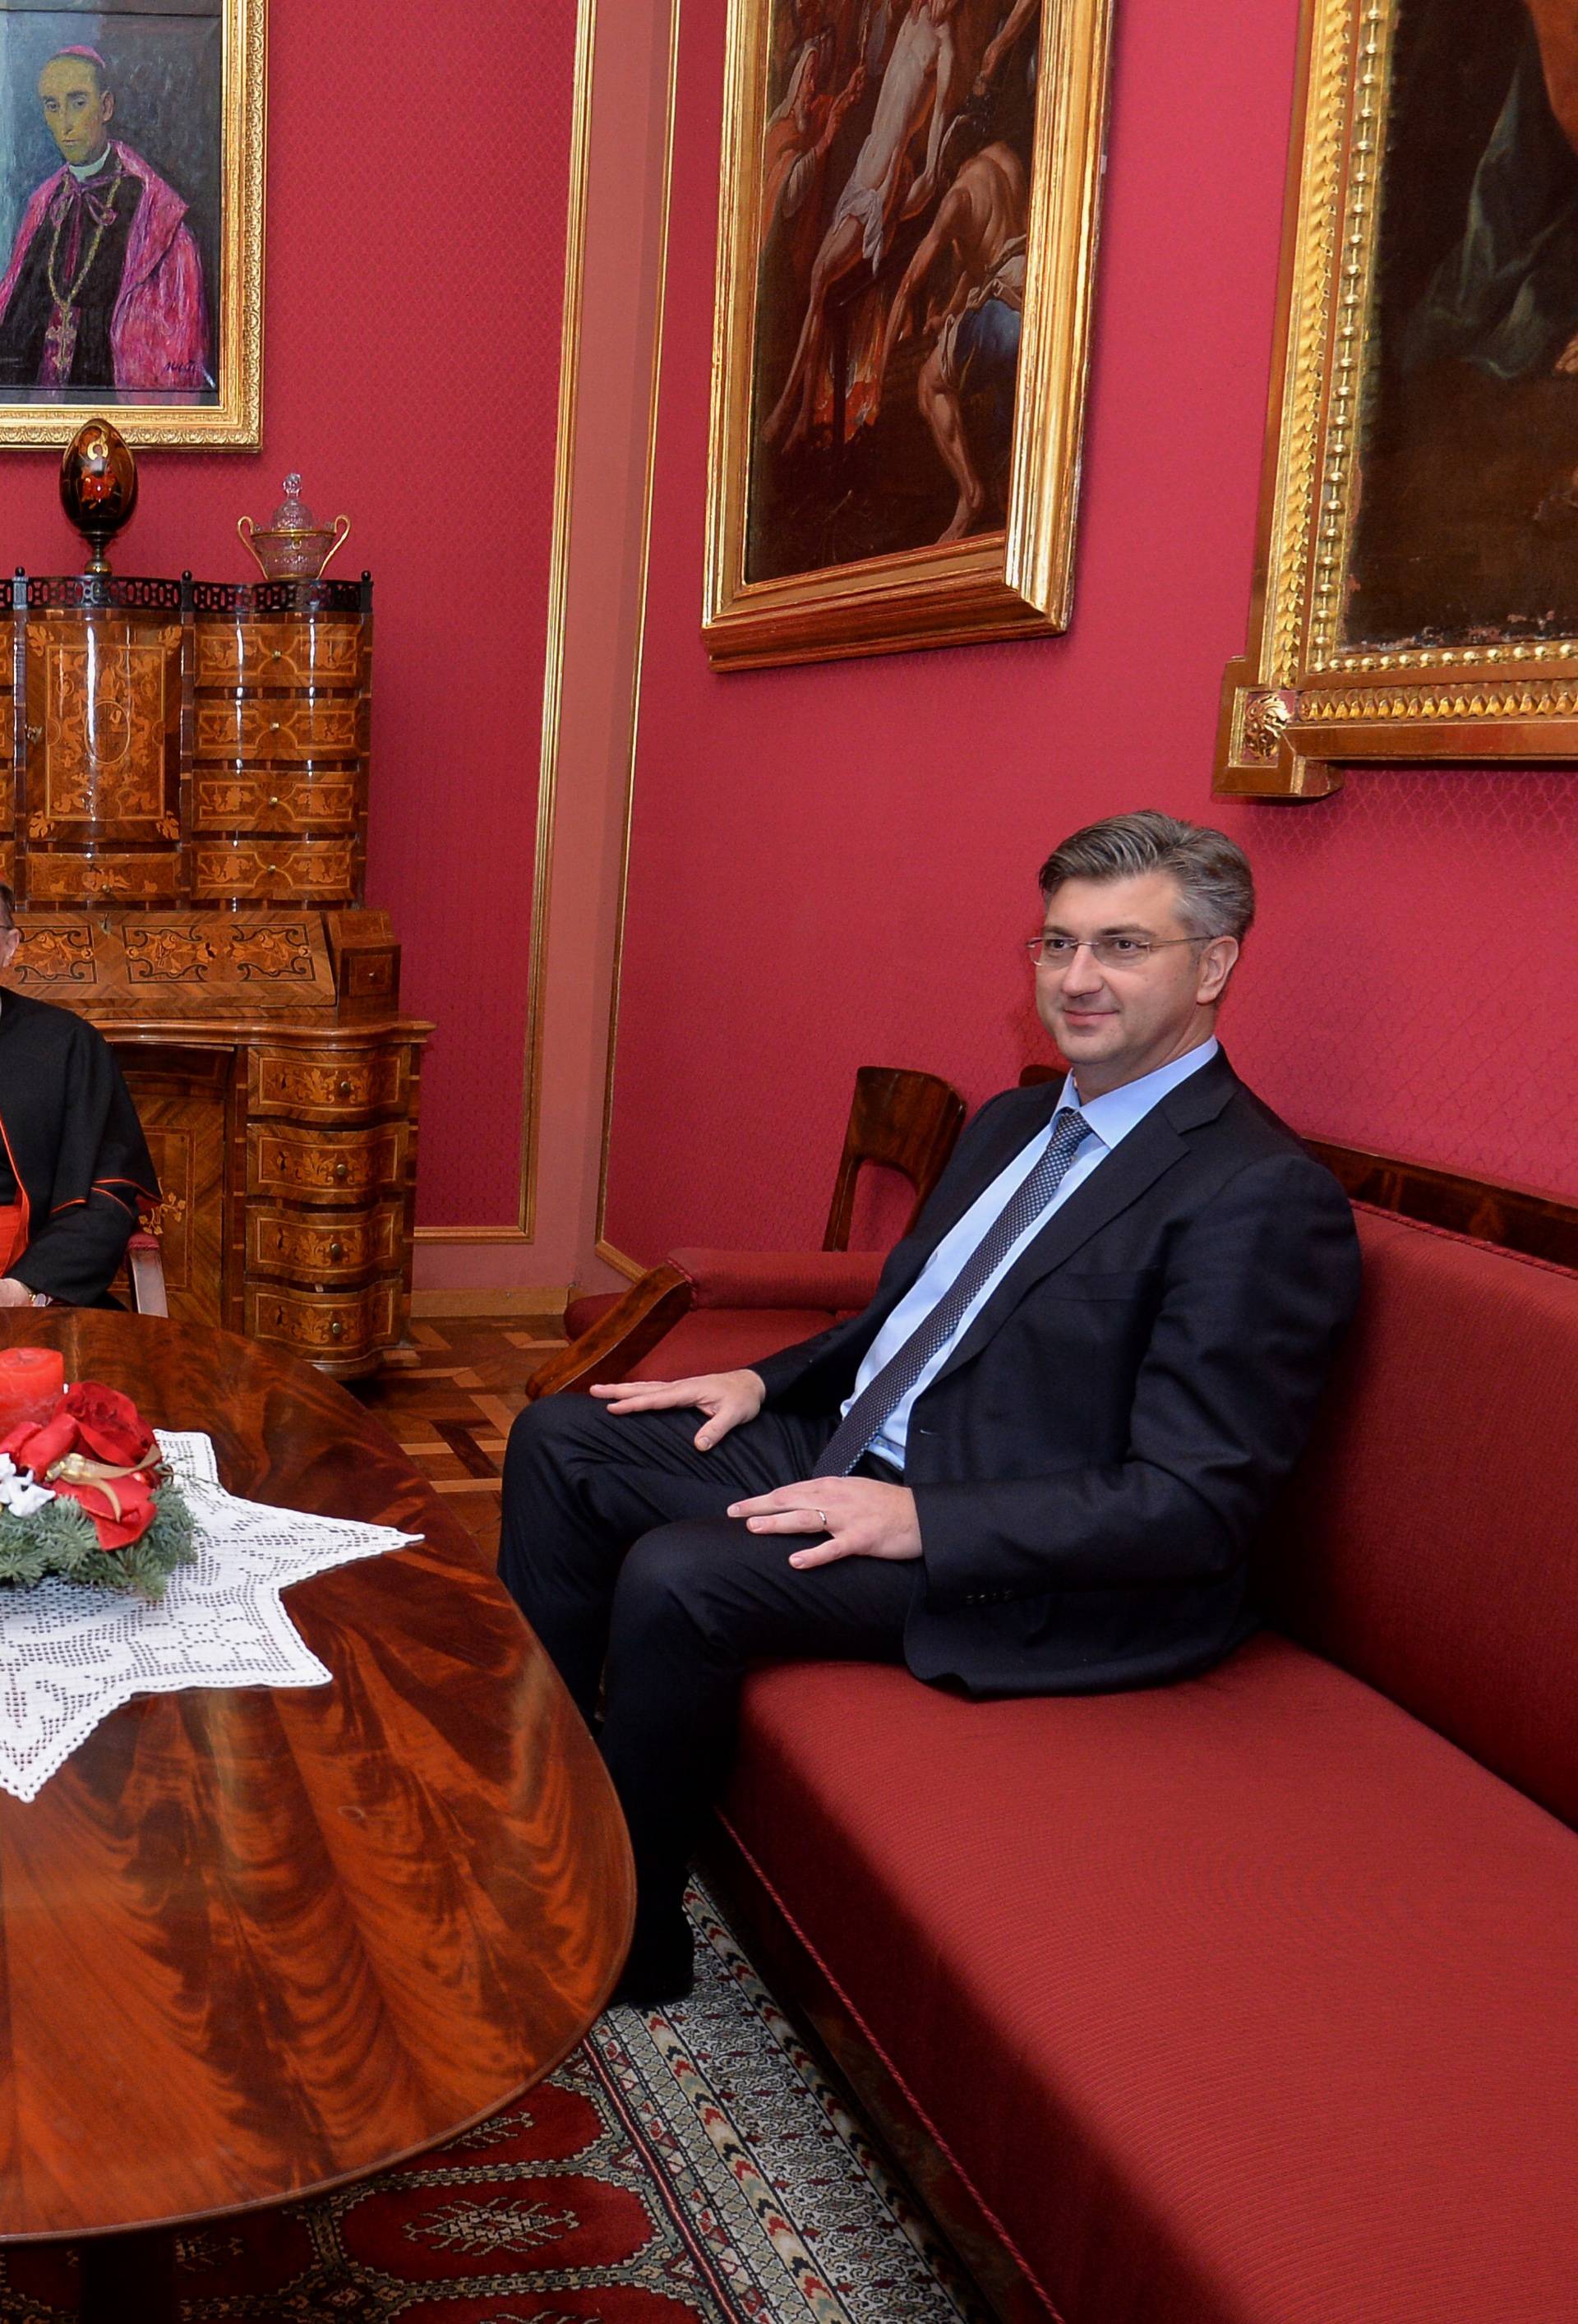 Bozanić i Plenković razgovarali su o suradnji u Crkve i države